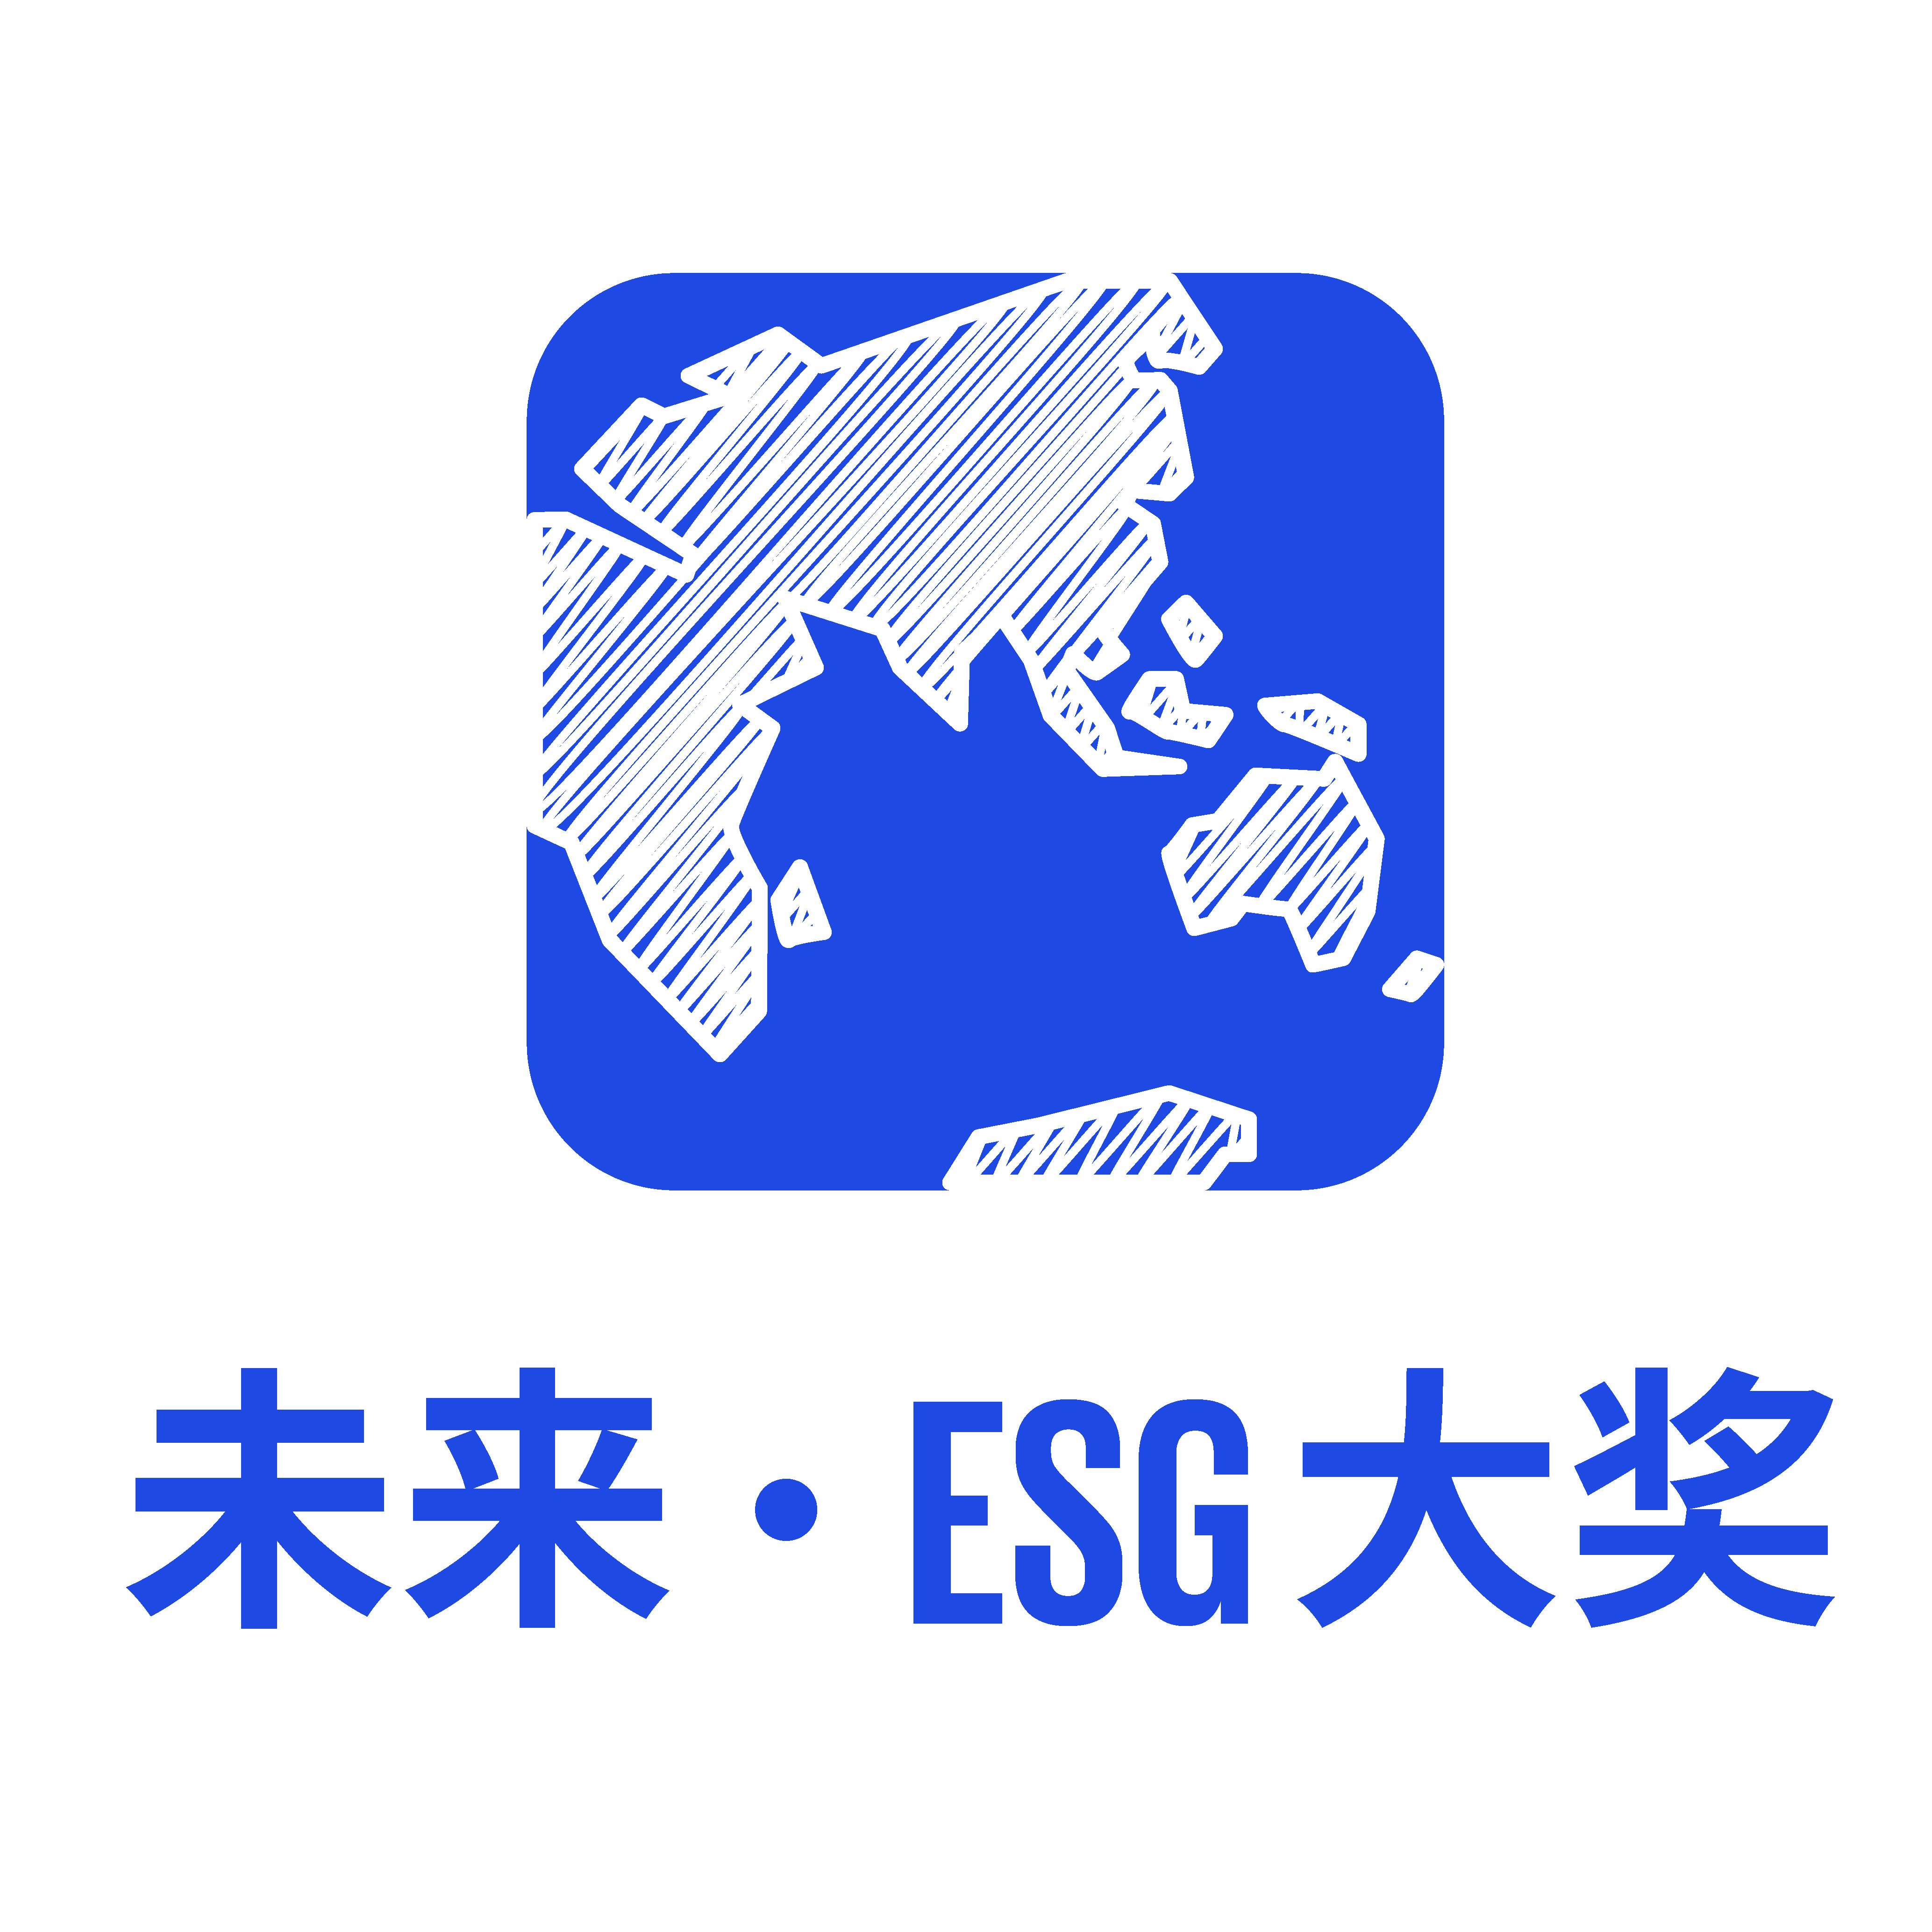 未来·ESG大奖